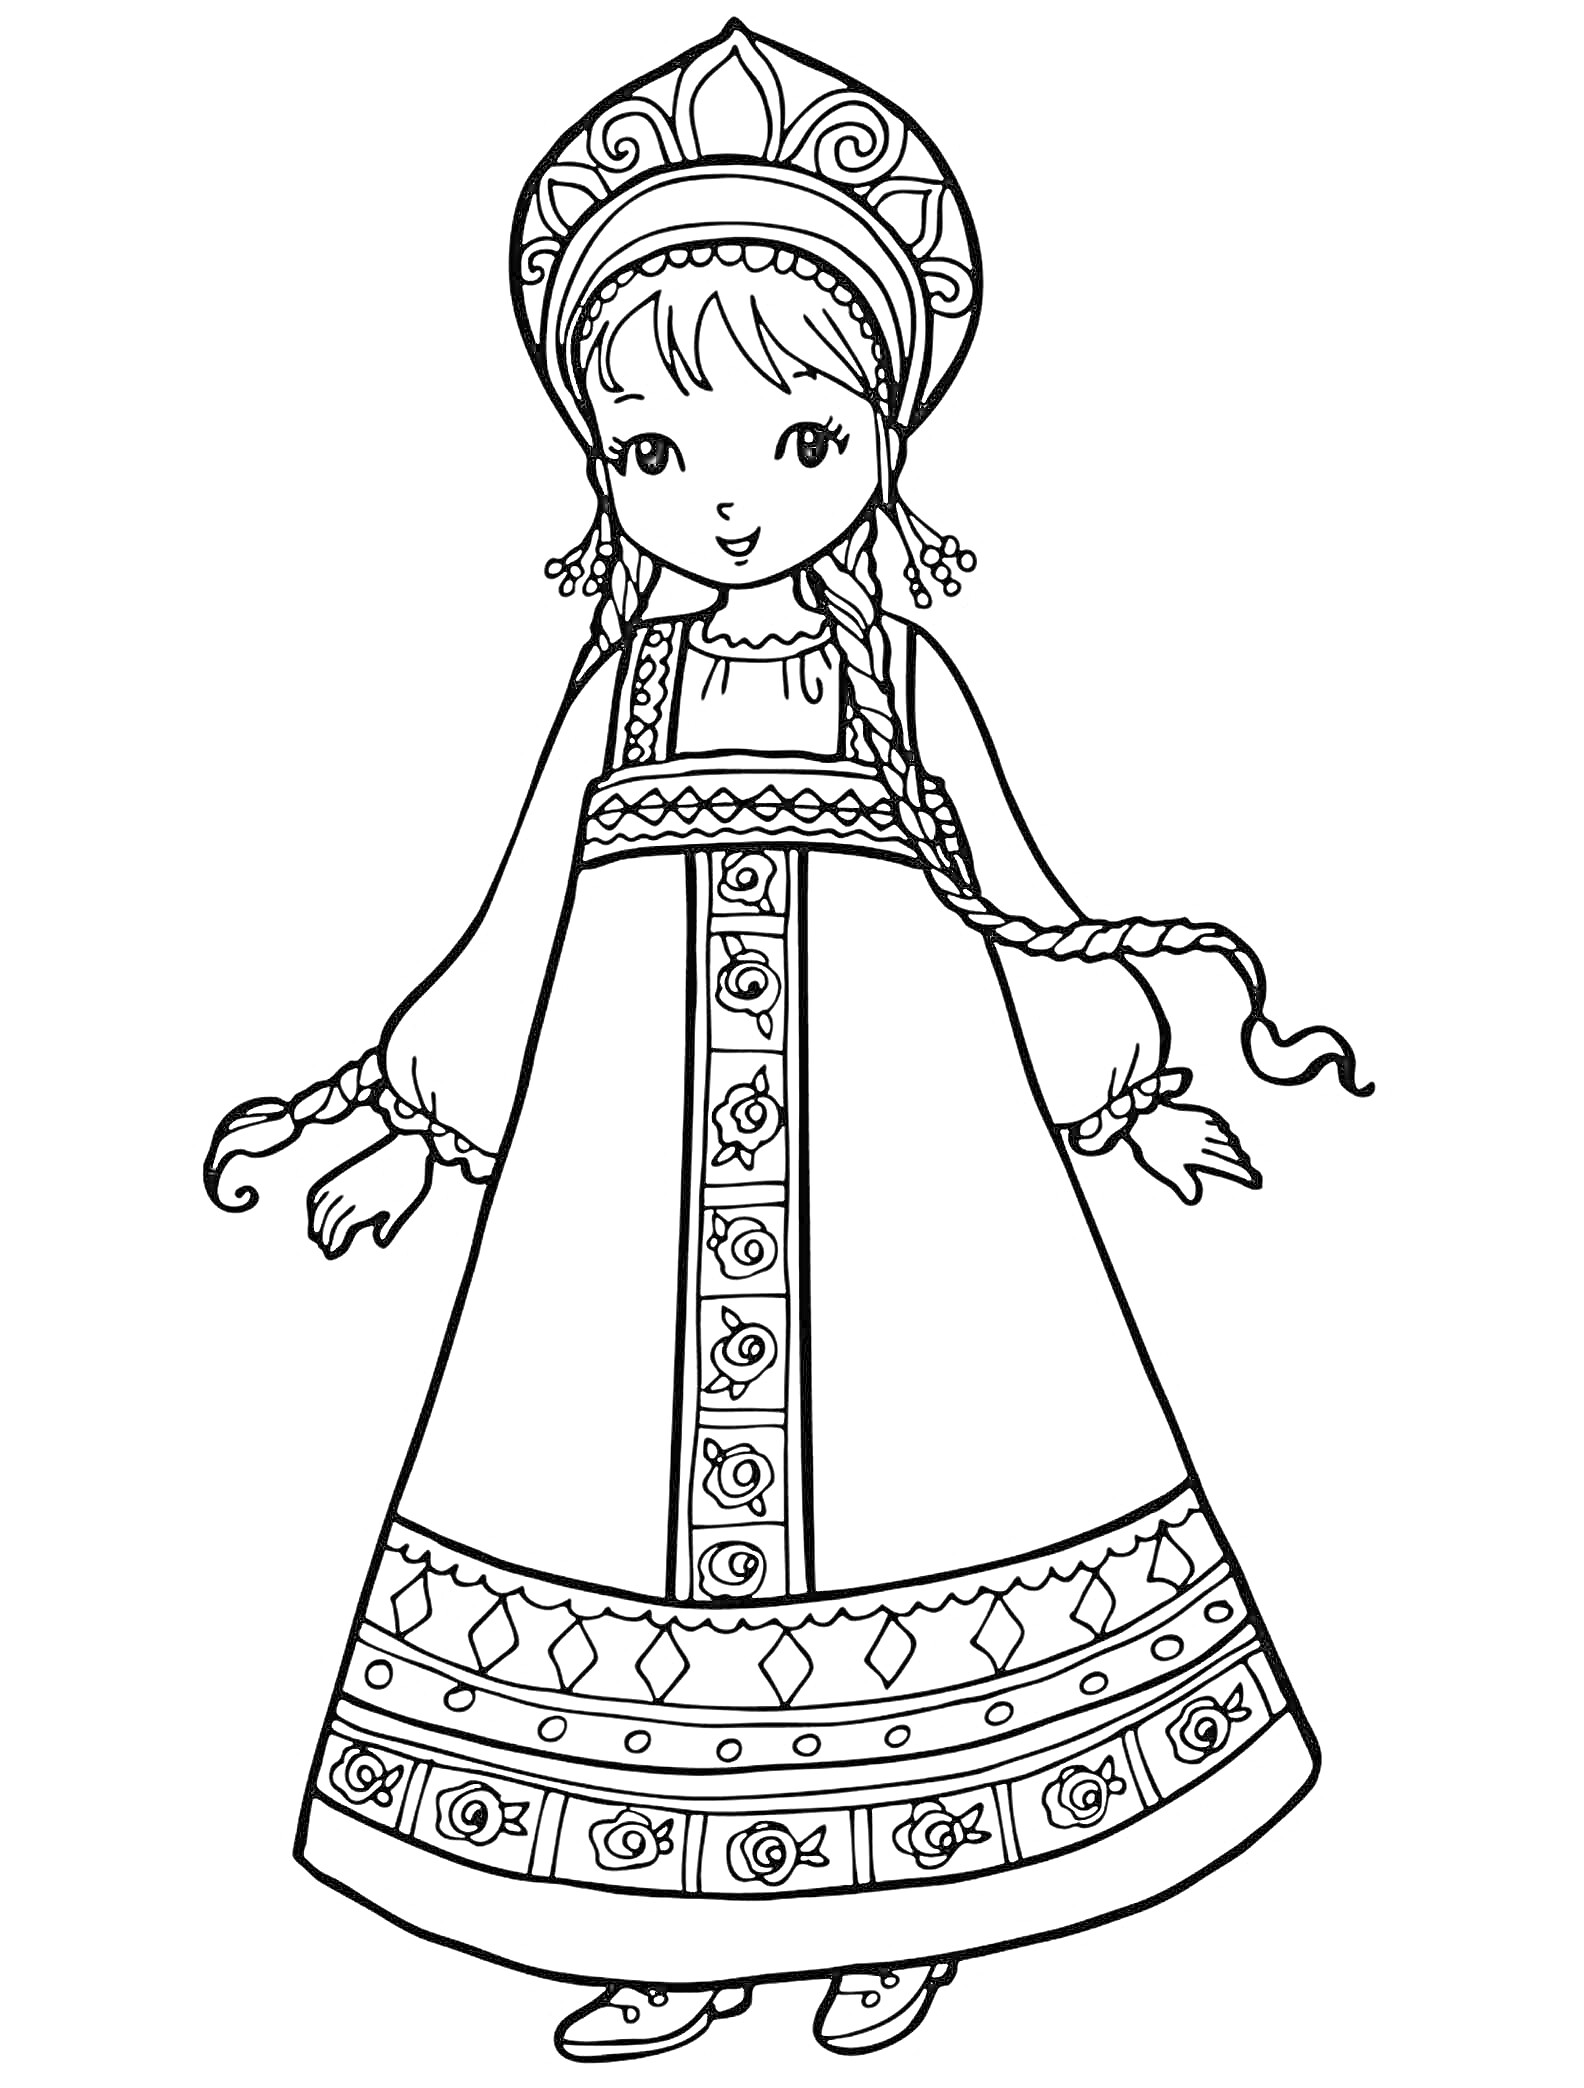 Раскраска Кукла в традиционной народной одежде с кокошником, платьем с орнаментом и косичками